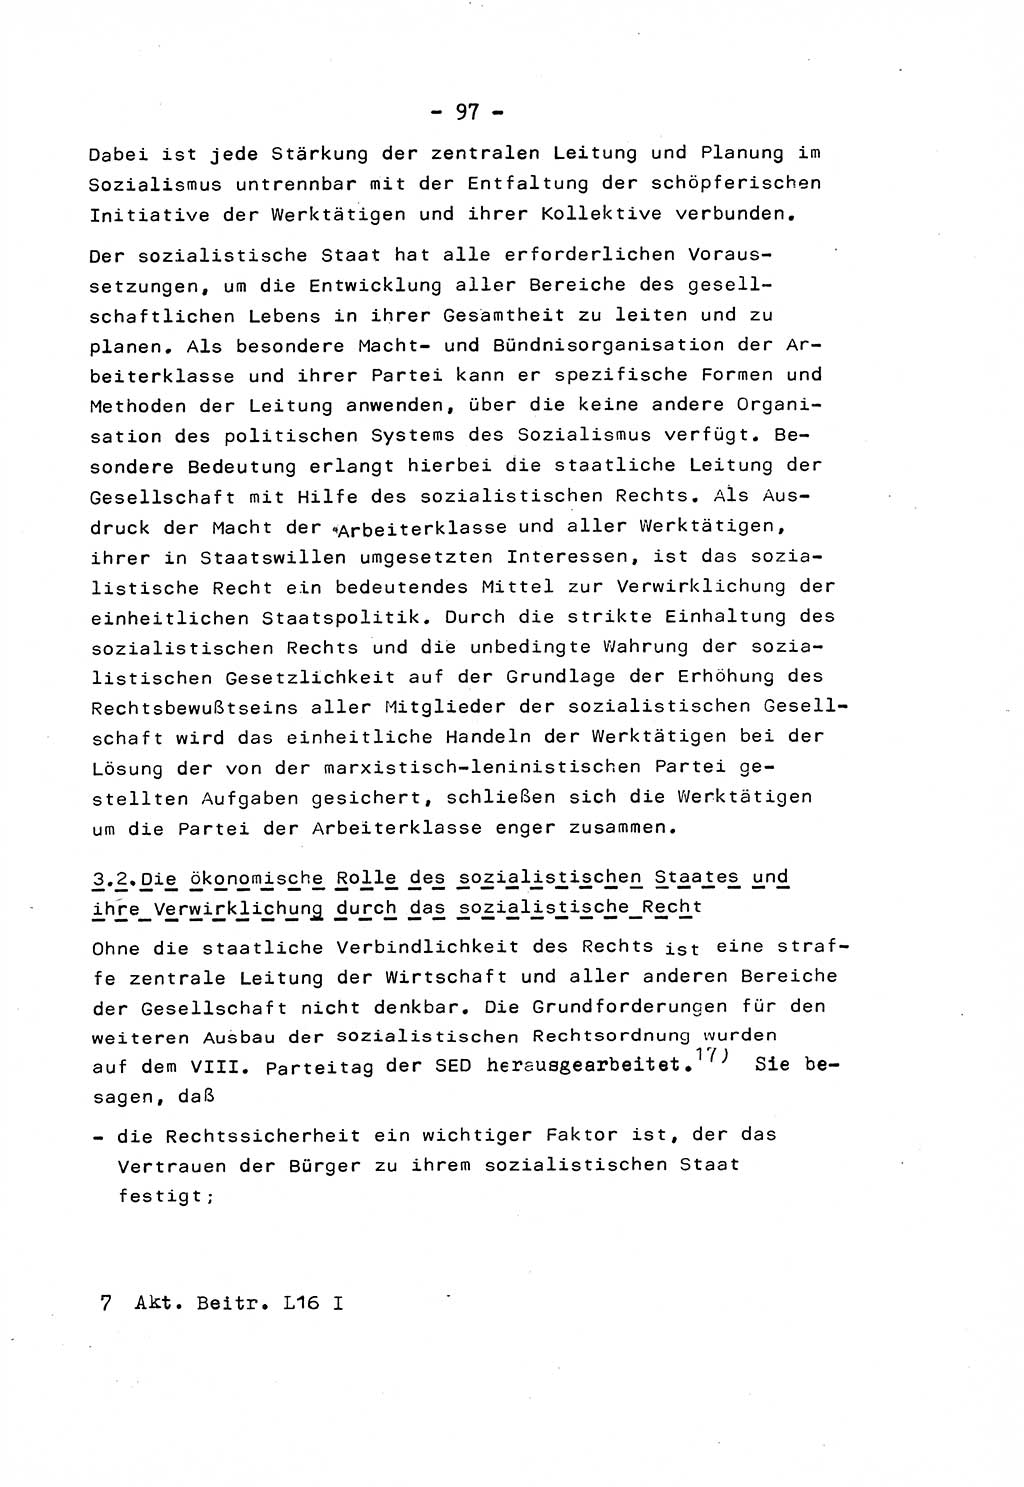 Marxistisch-leninistische Staats- und Rechtstheorie [Deutsche Demokratische Republik (DDR)] 1975, Seite 97 (ML St.-R.-Th. DDR 1975, S. 97)